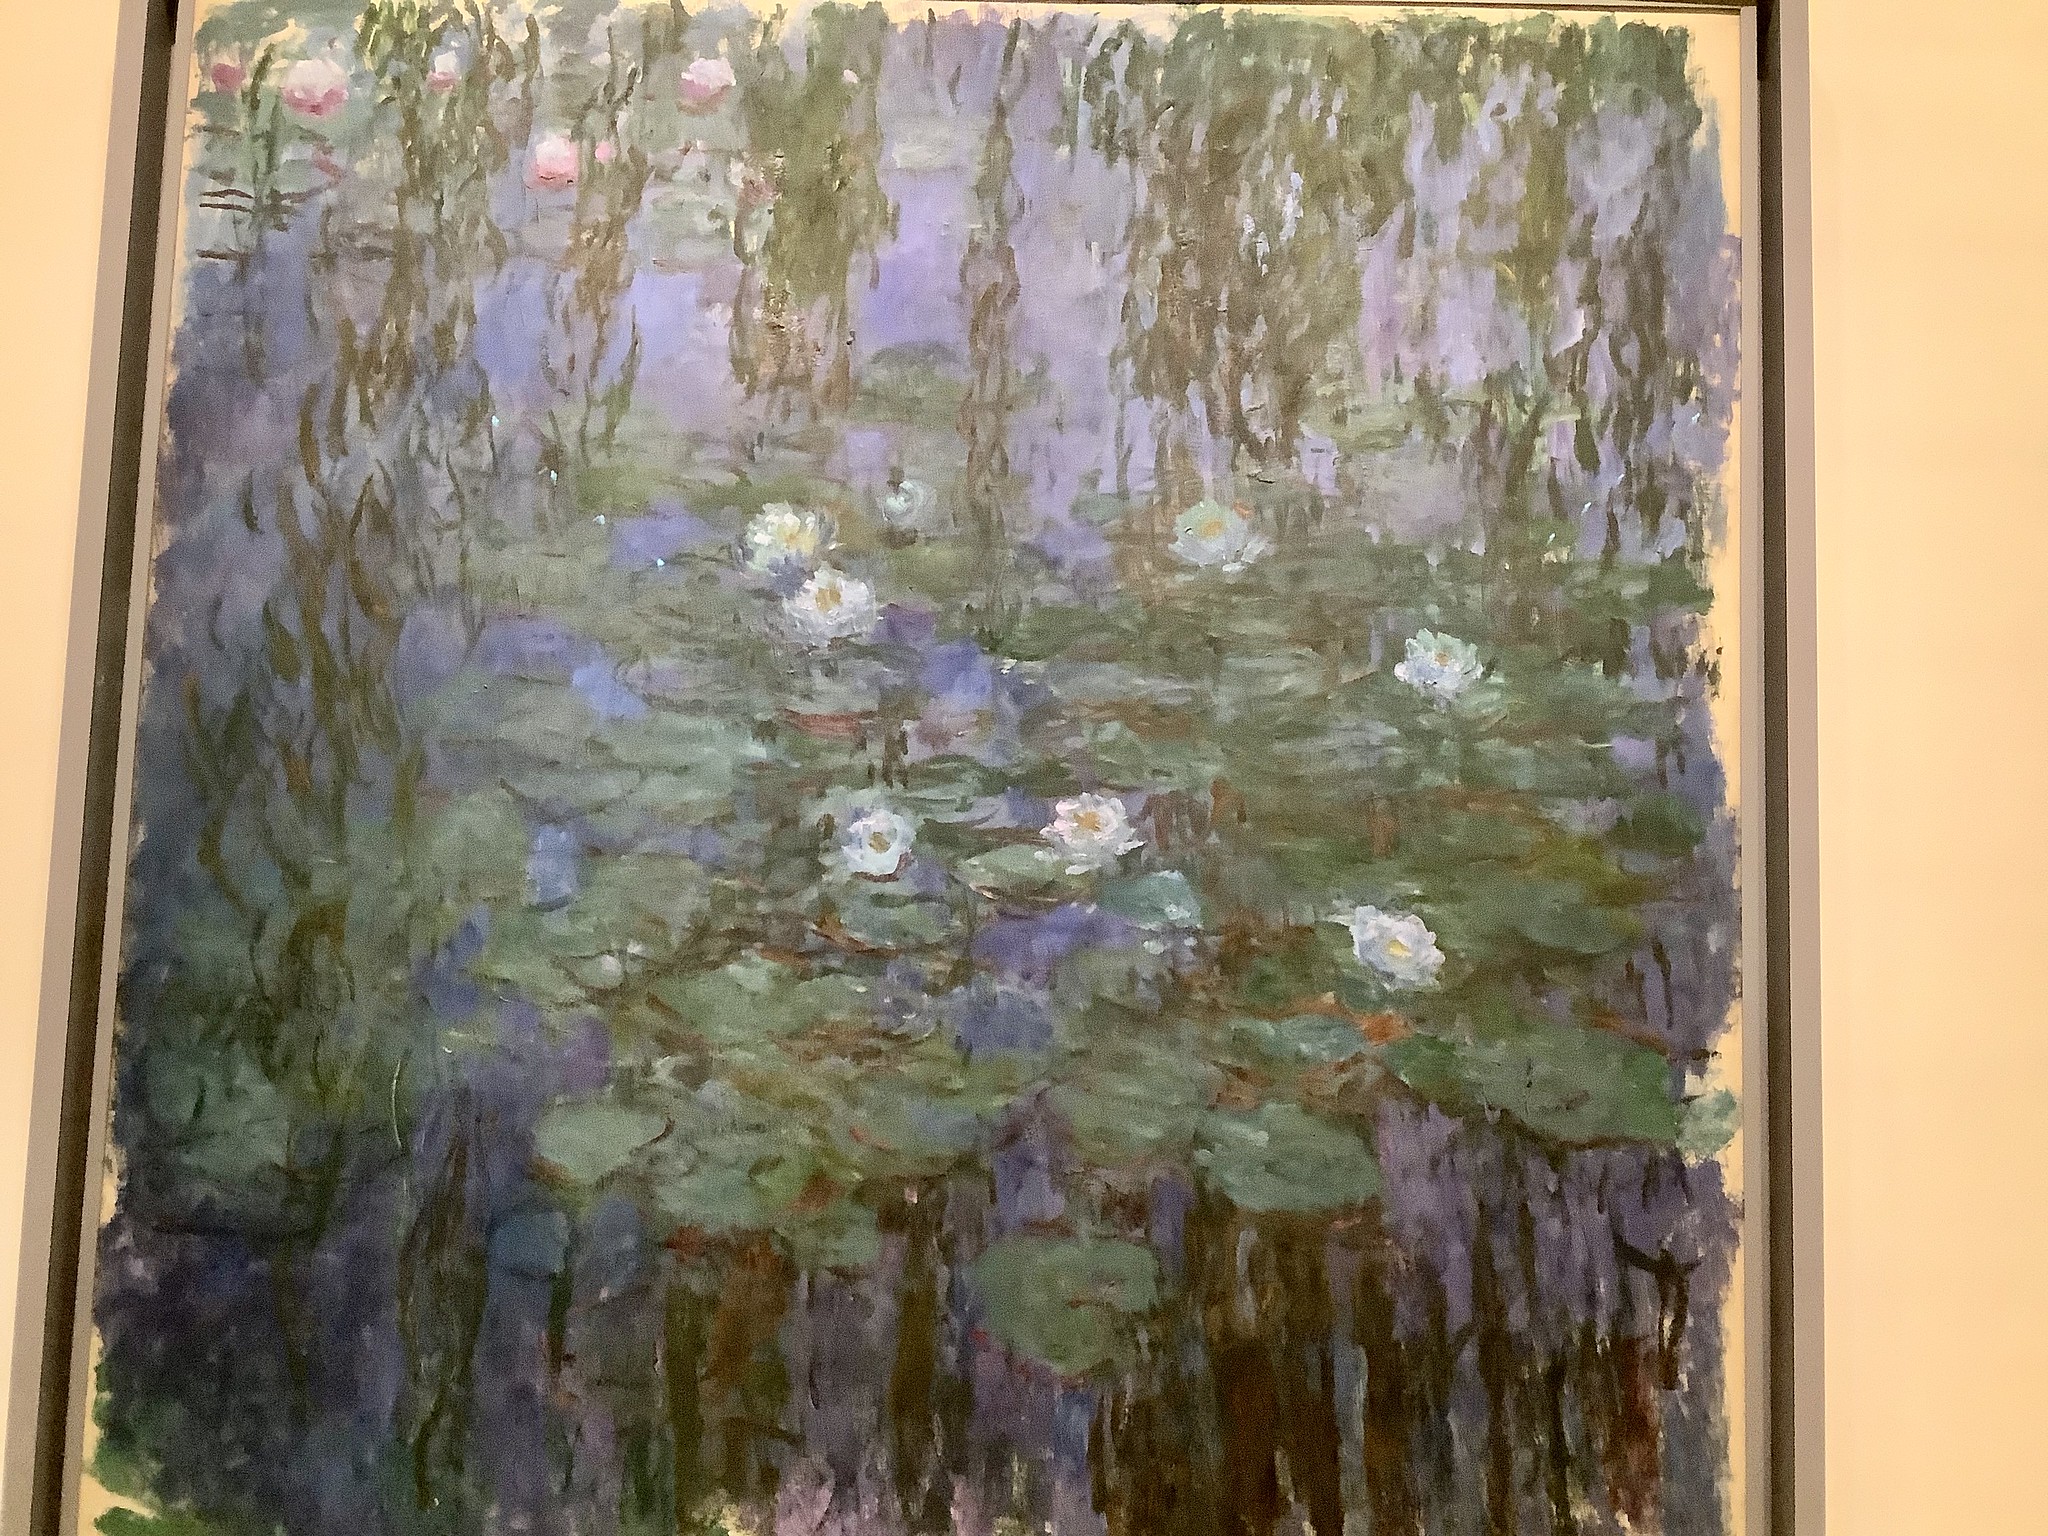 paris breakfasts: Claude Monet - Joan Mitchell